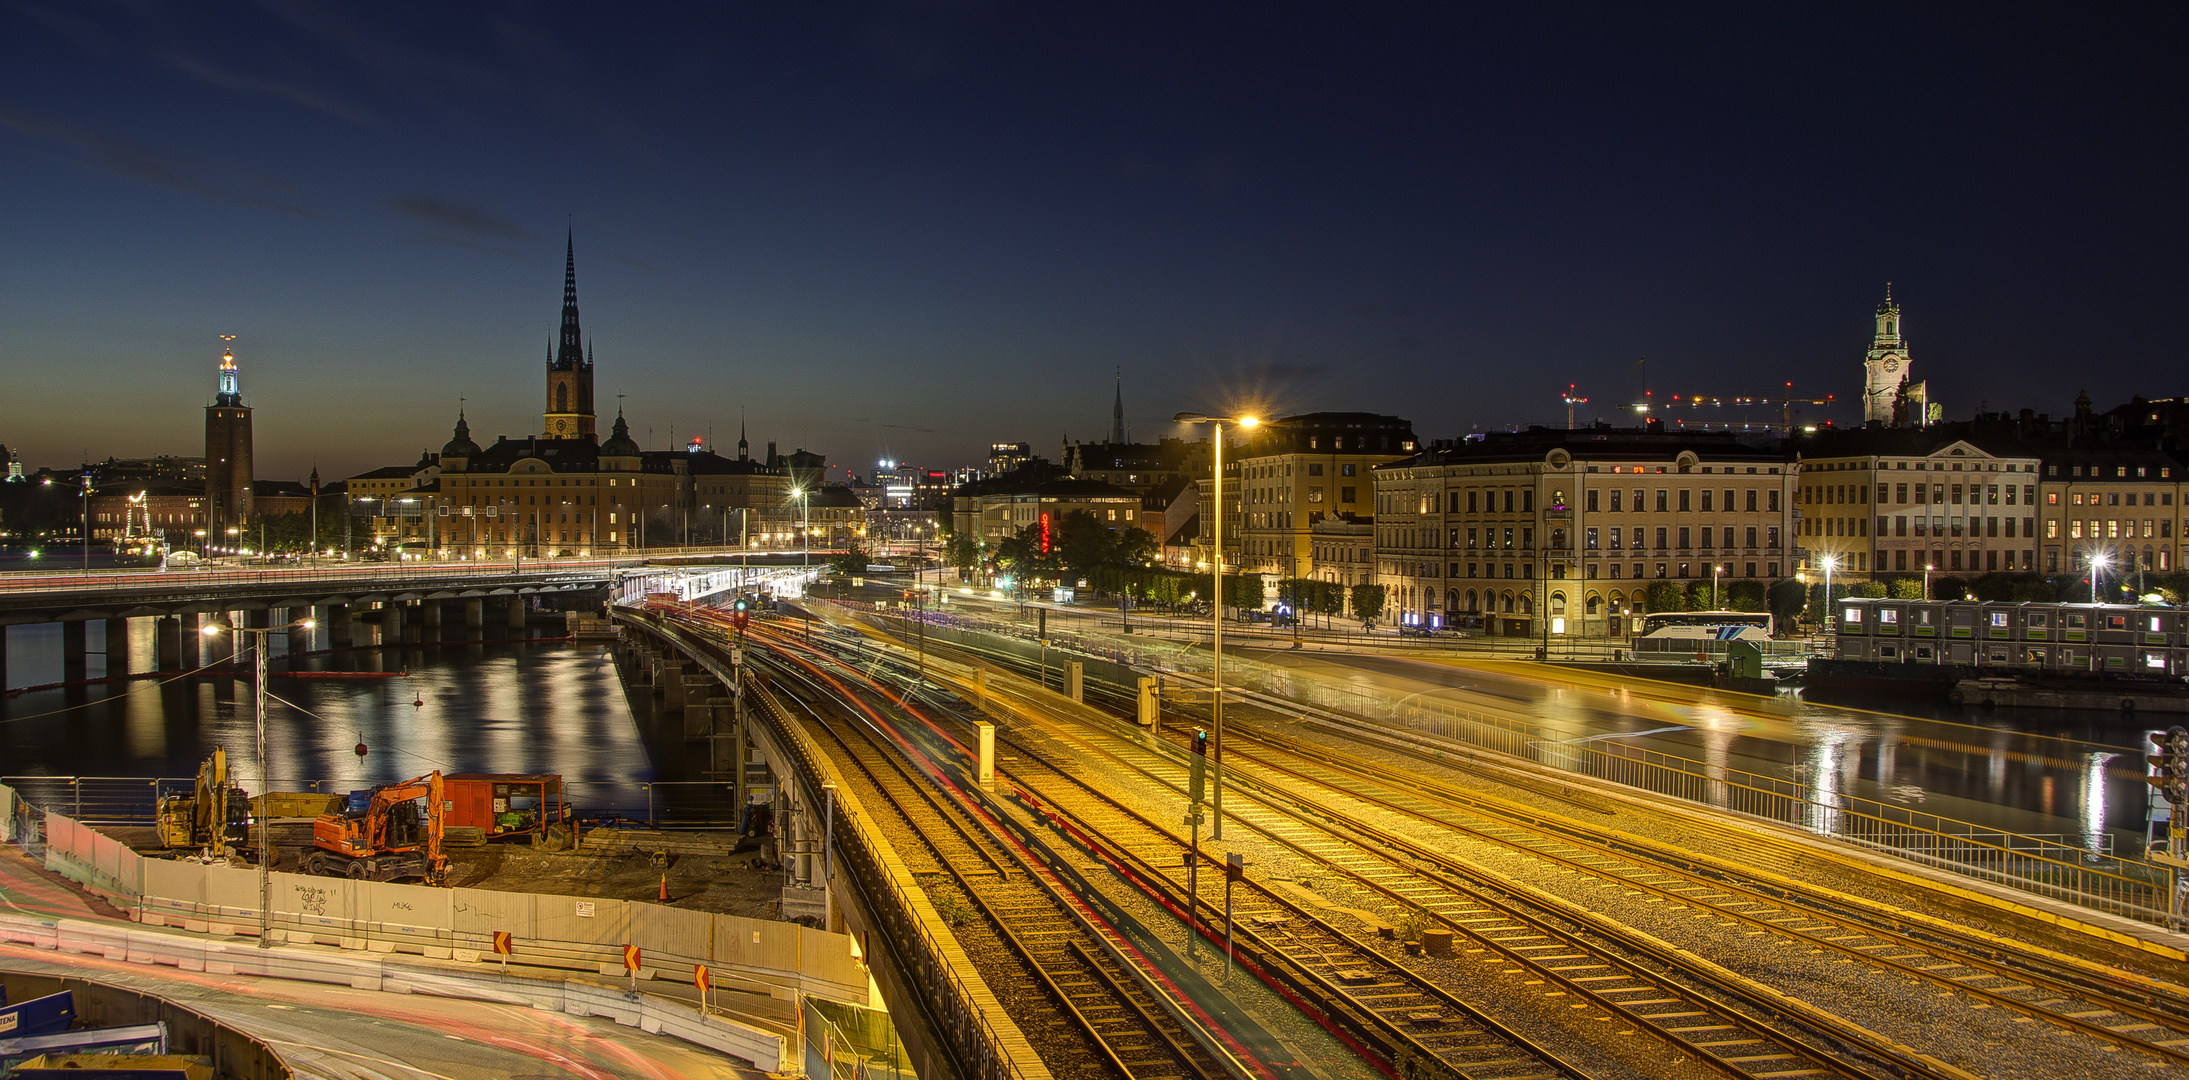 Stockholm - Sodermalmstorg - Metro Railway - Riddarholmskyrkan - Town Hall